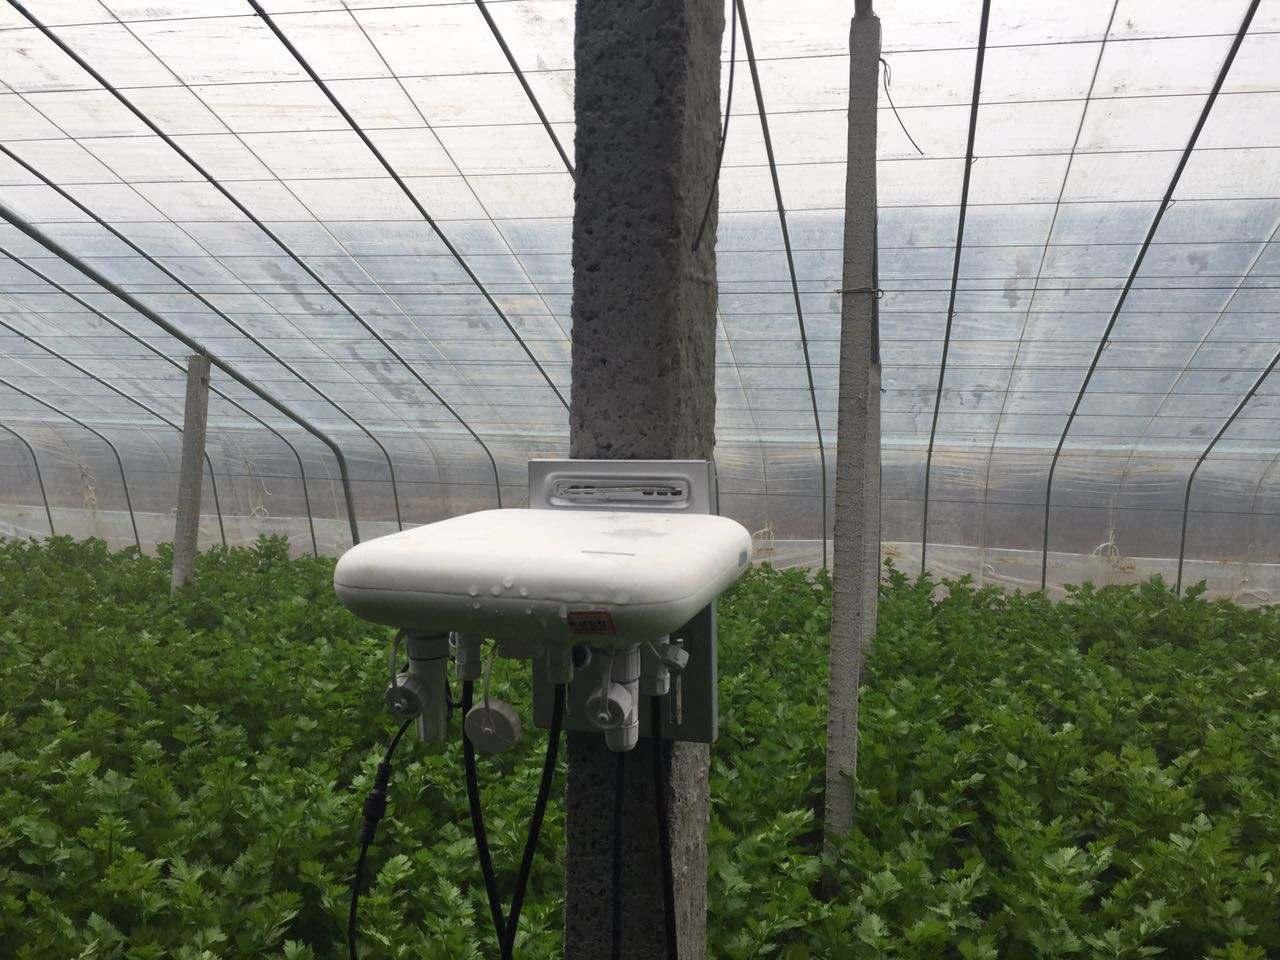 NB-IOT温湿度记录仪_无线温度监测系统厂家